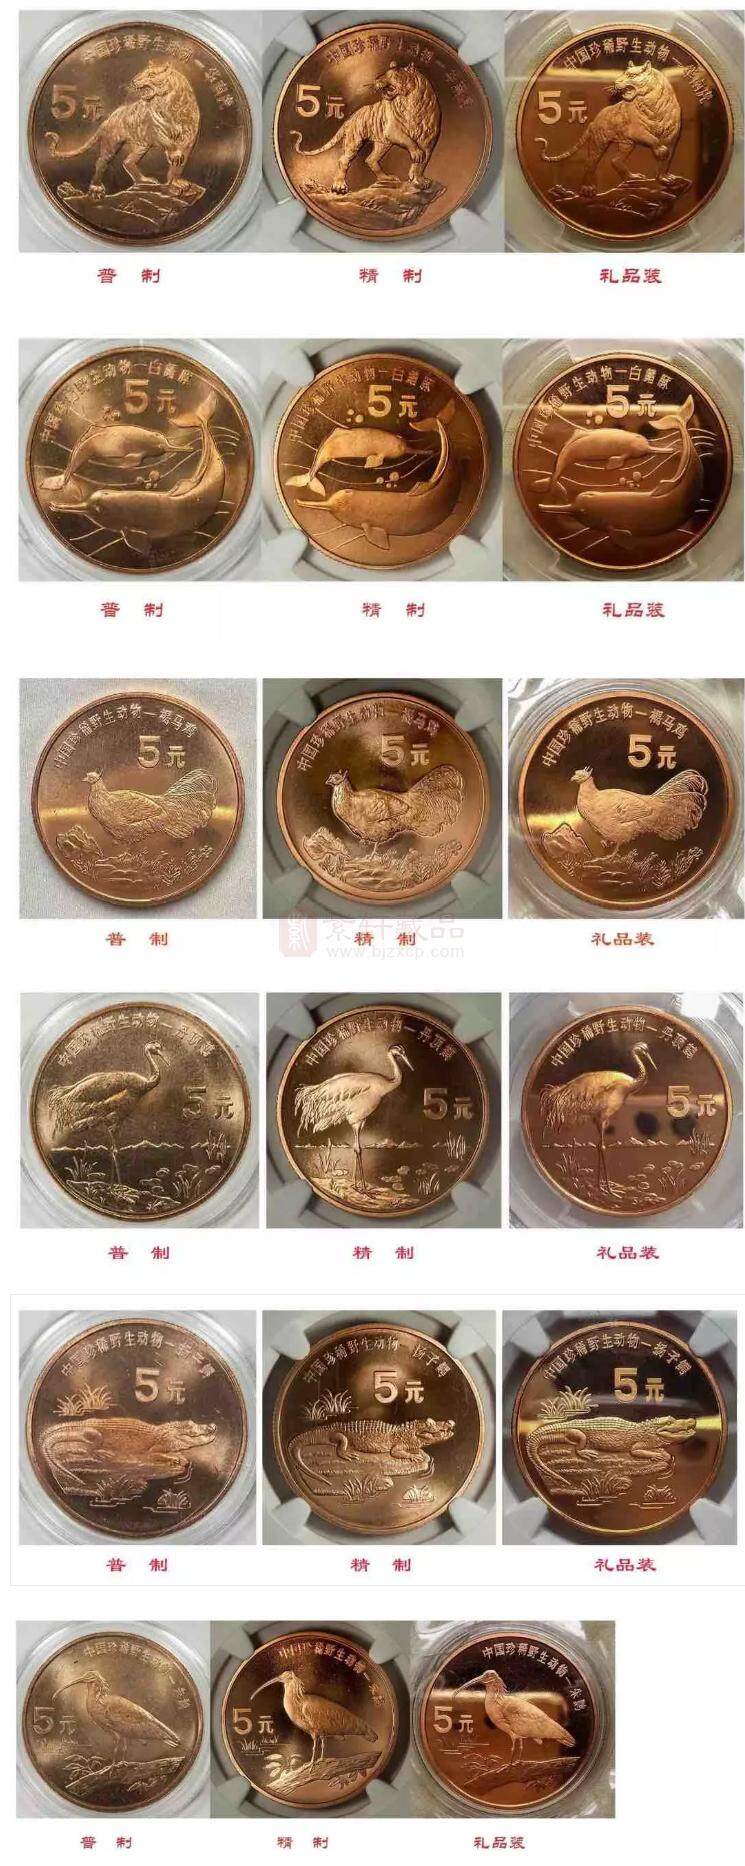 野生动物系列纪念币居然有普制币、精制币、样币、精制样币等多种版别！